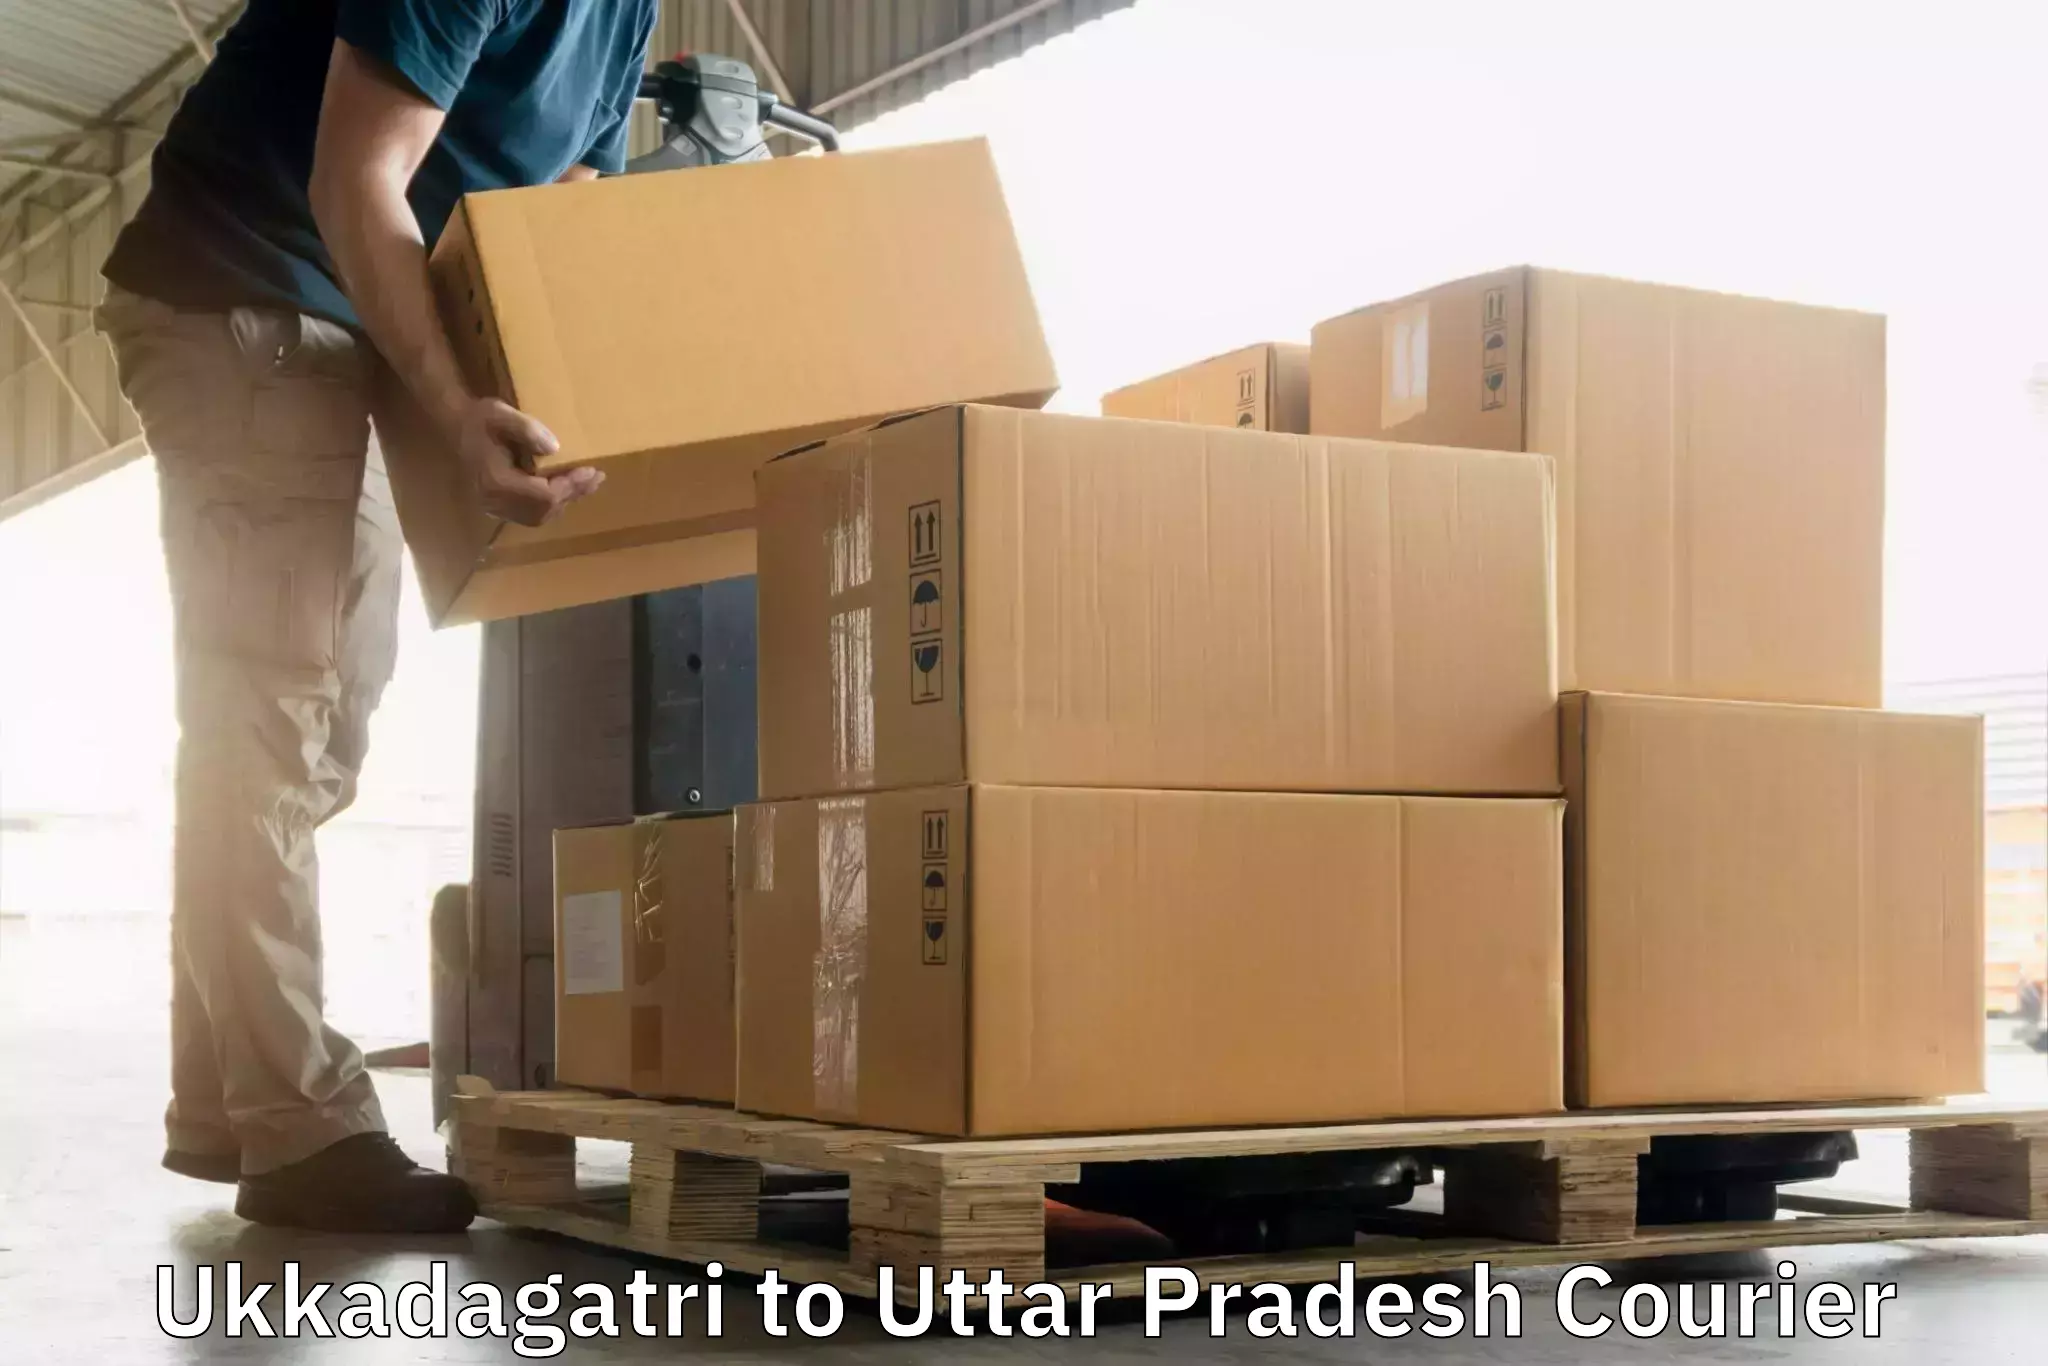 Door-to-door freight service Ukkadagatri to Dhampur